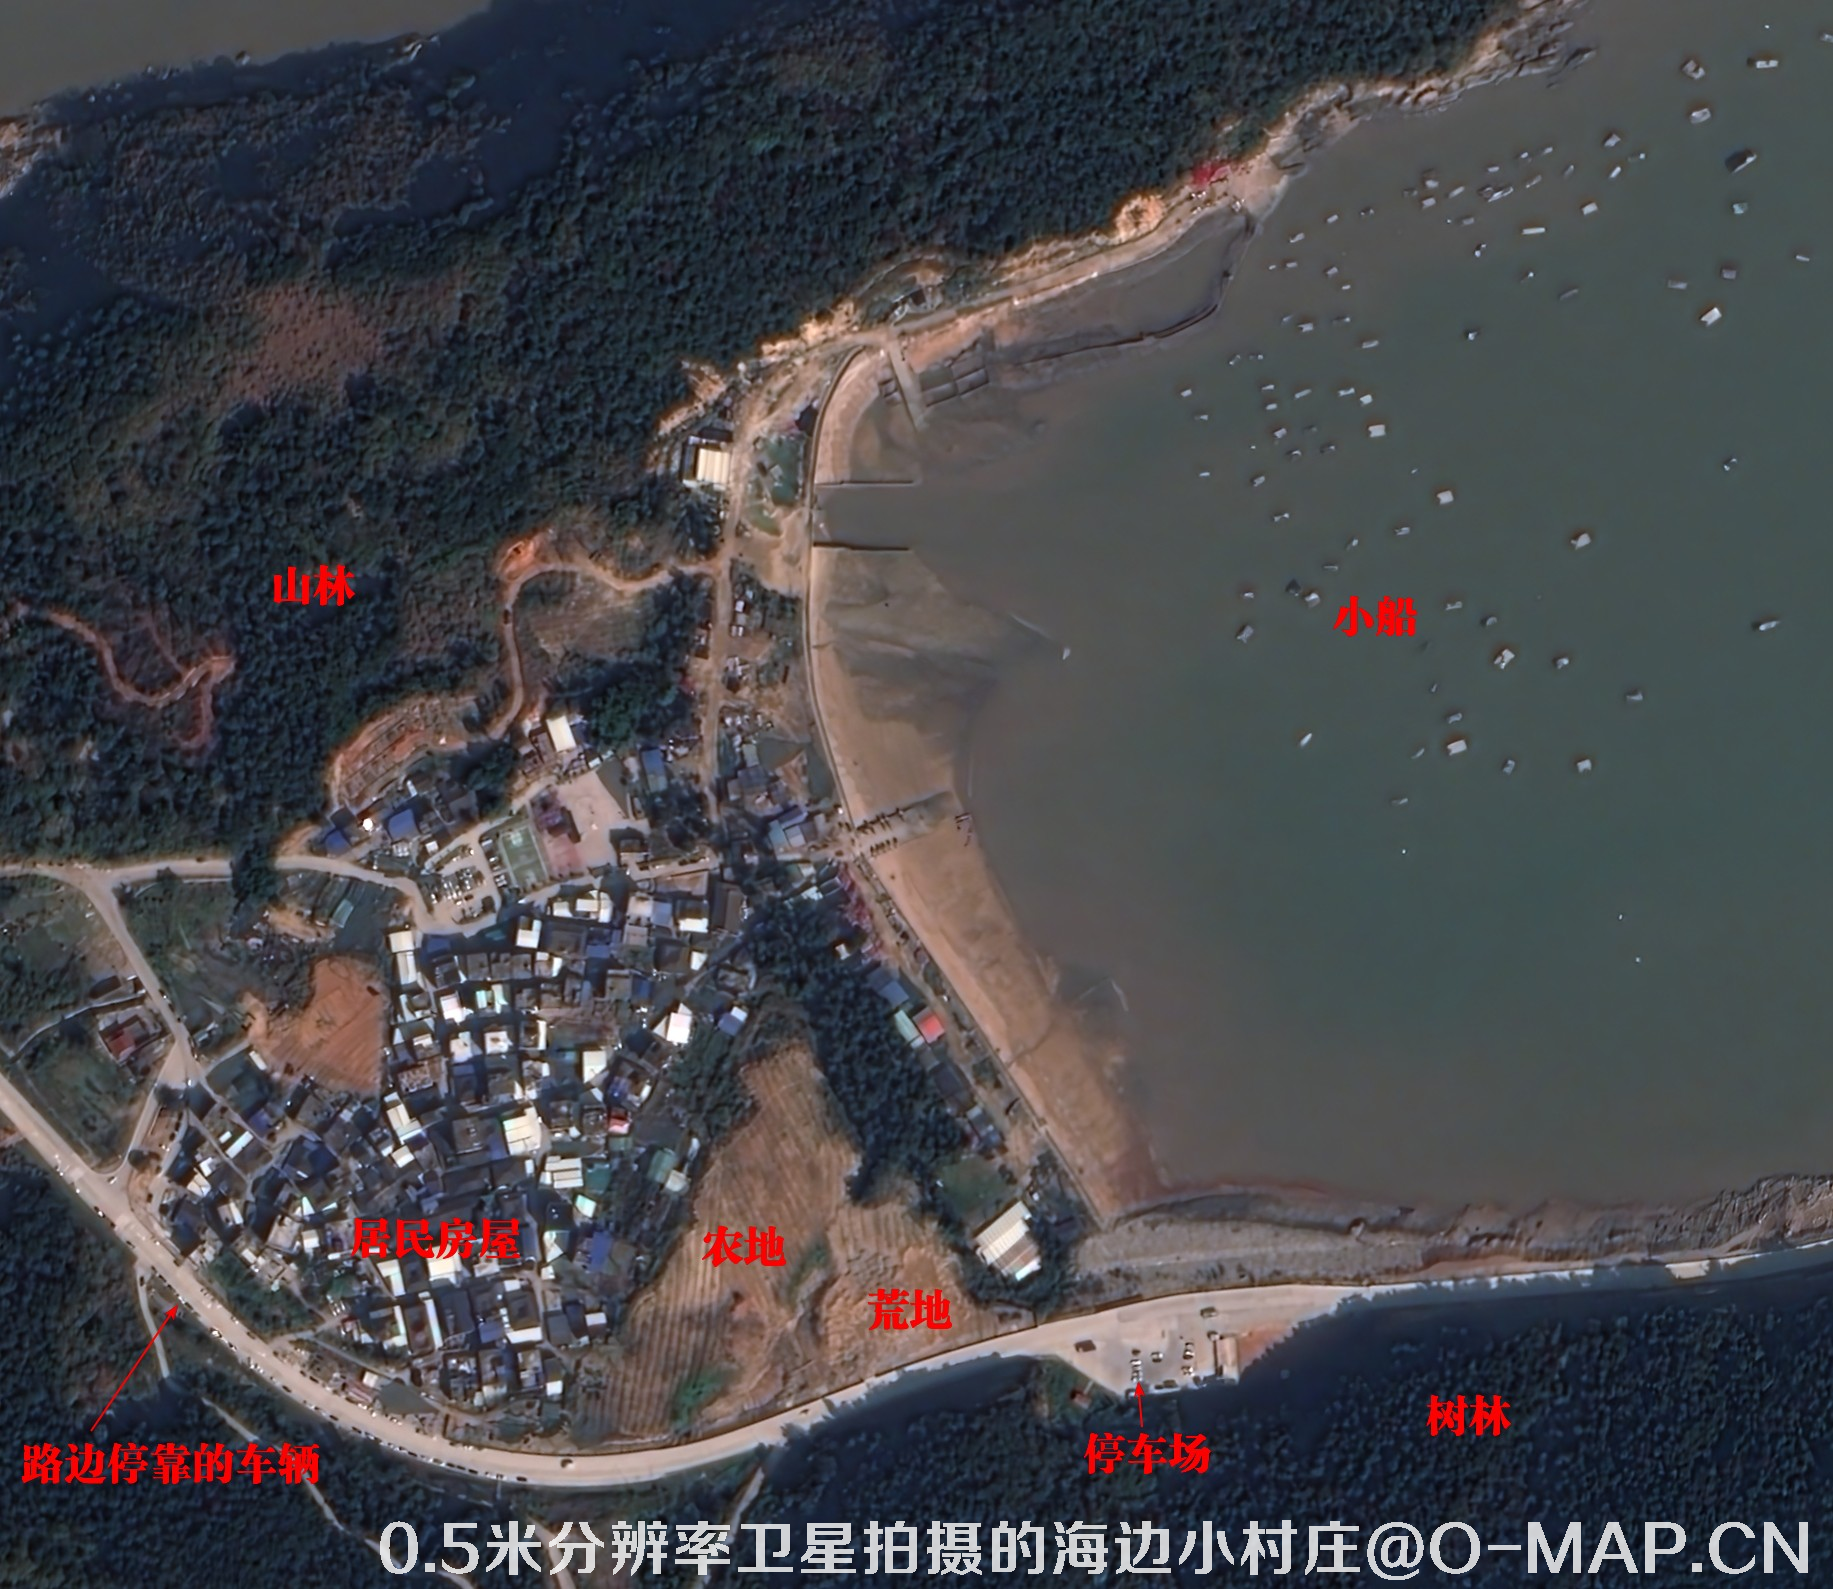 0.5米分辨率卫星拍摄的海边小村庄